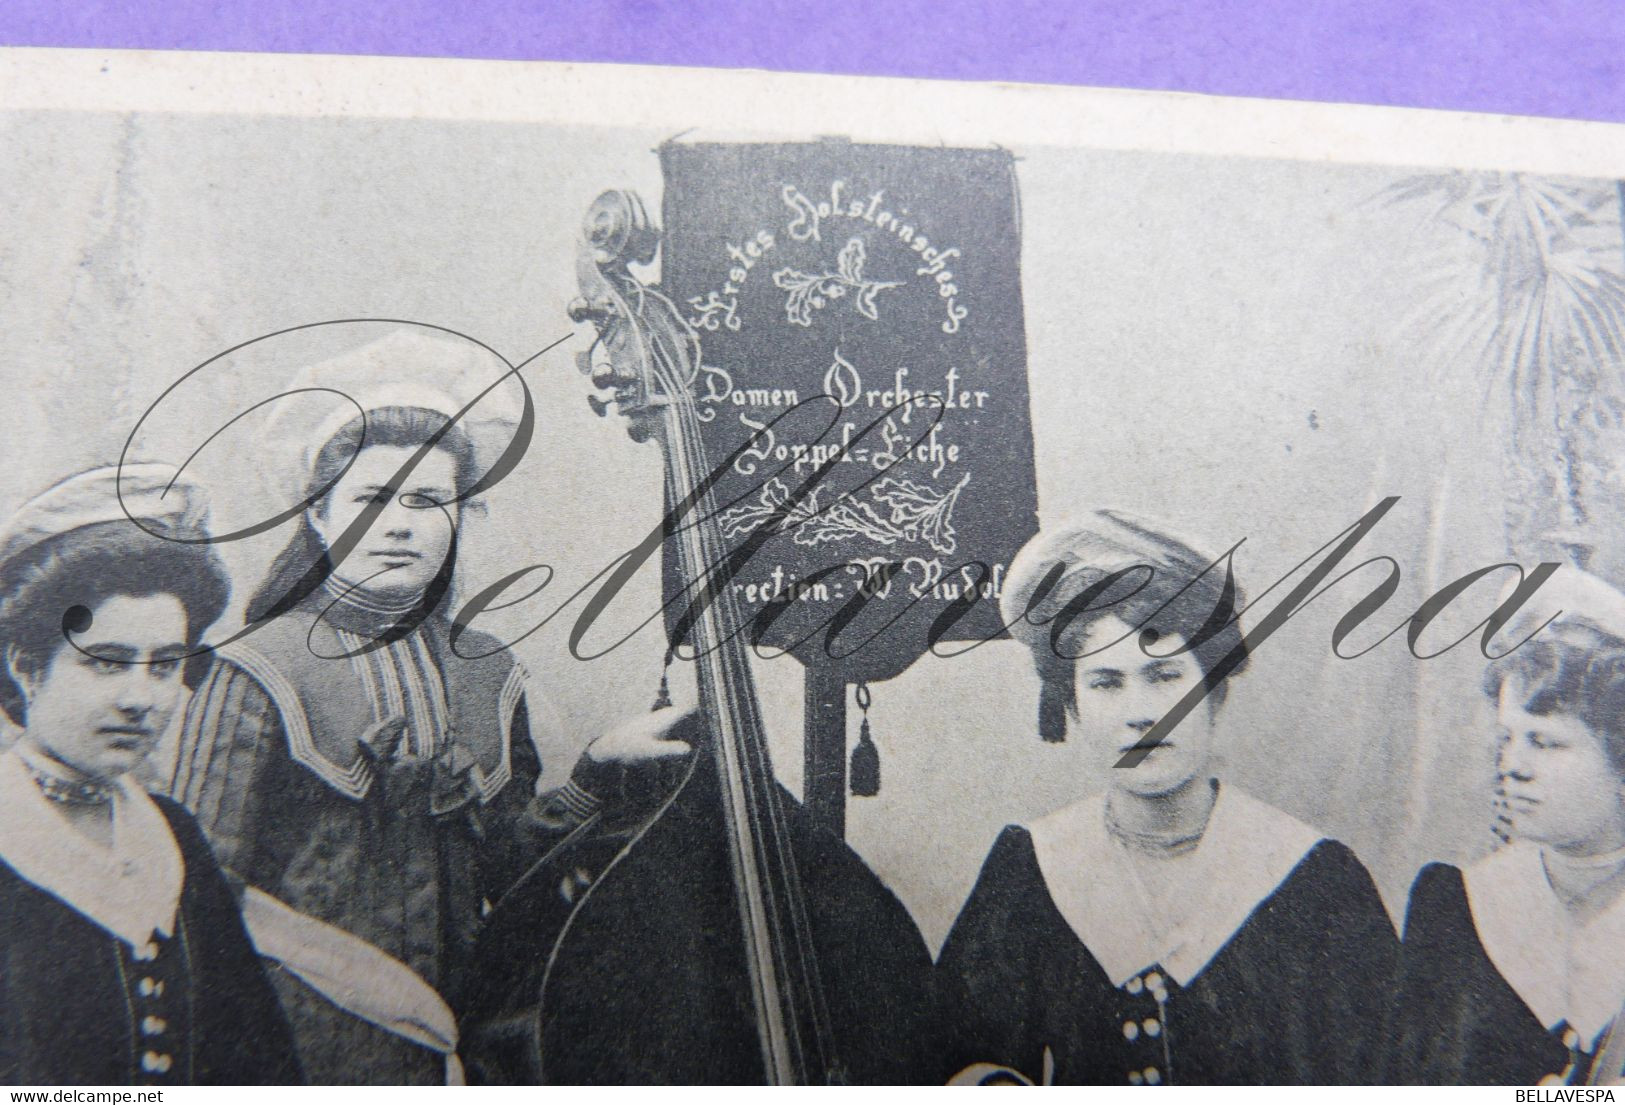 Schleswig-Holsteinisches Damen Orchester "Doppel-Eiche- Dir W.Rudolph.Viool Cello Contrabas Altviool. Edit Trenkler 1906 - Musique Et Musiciens